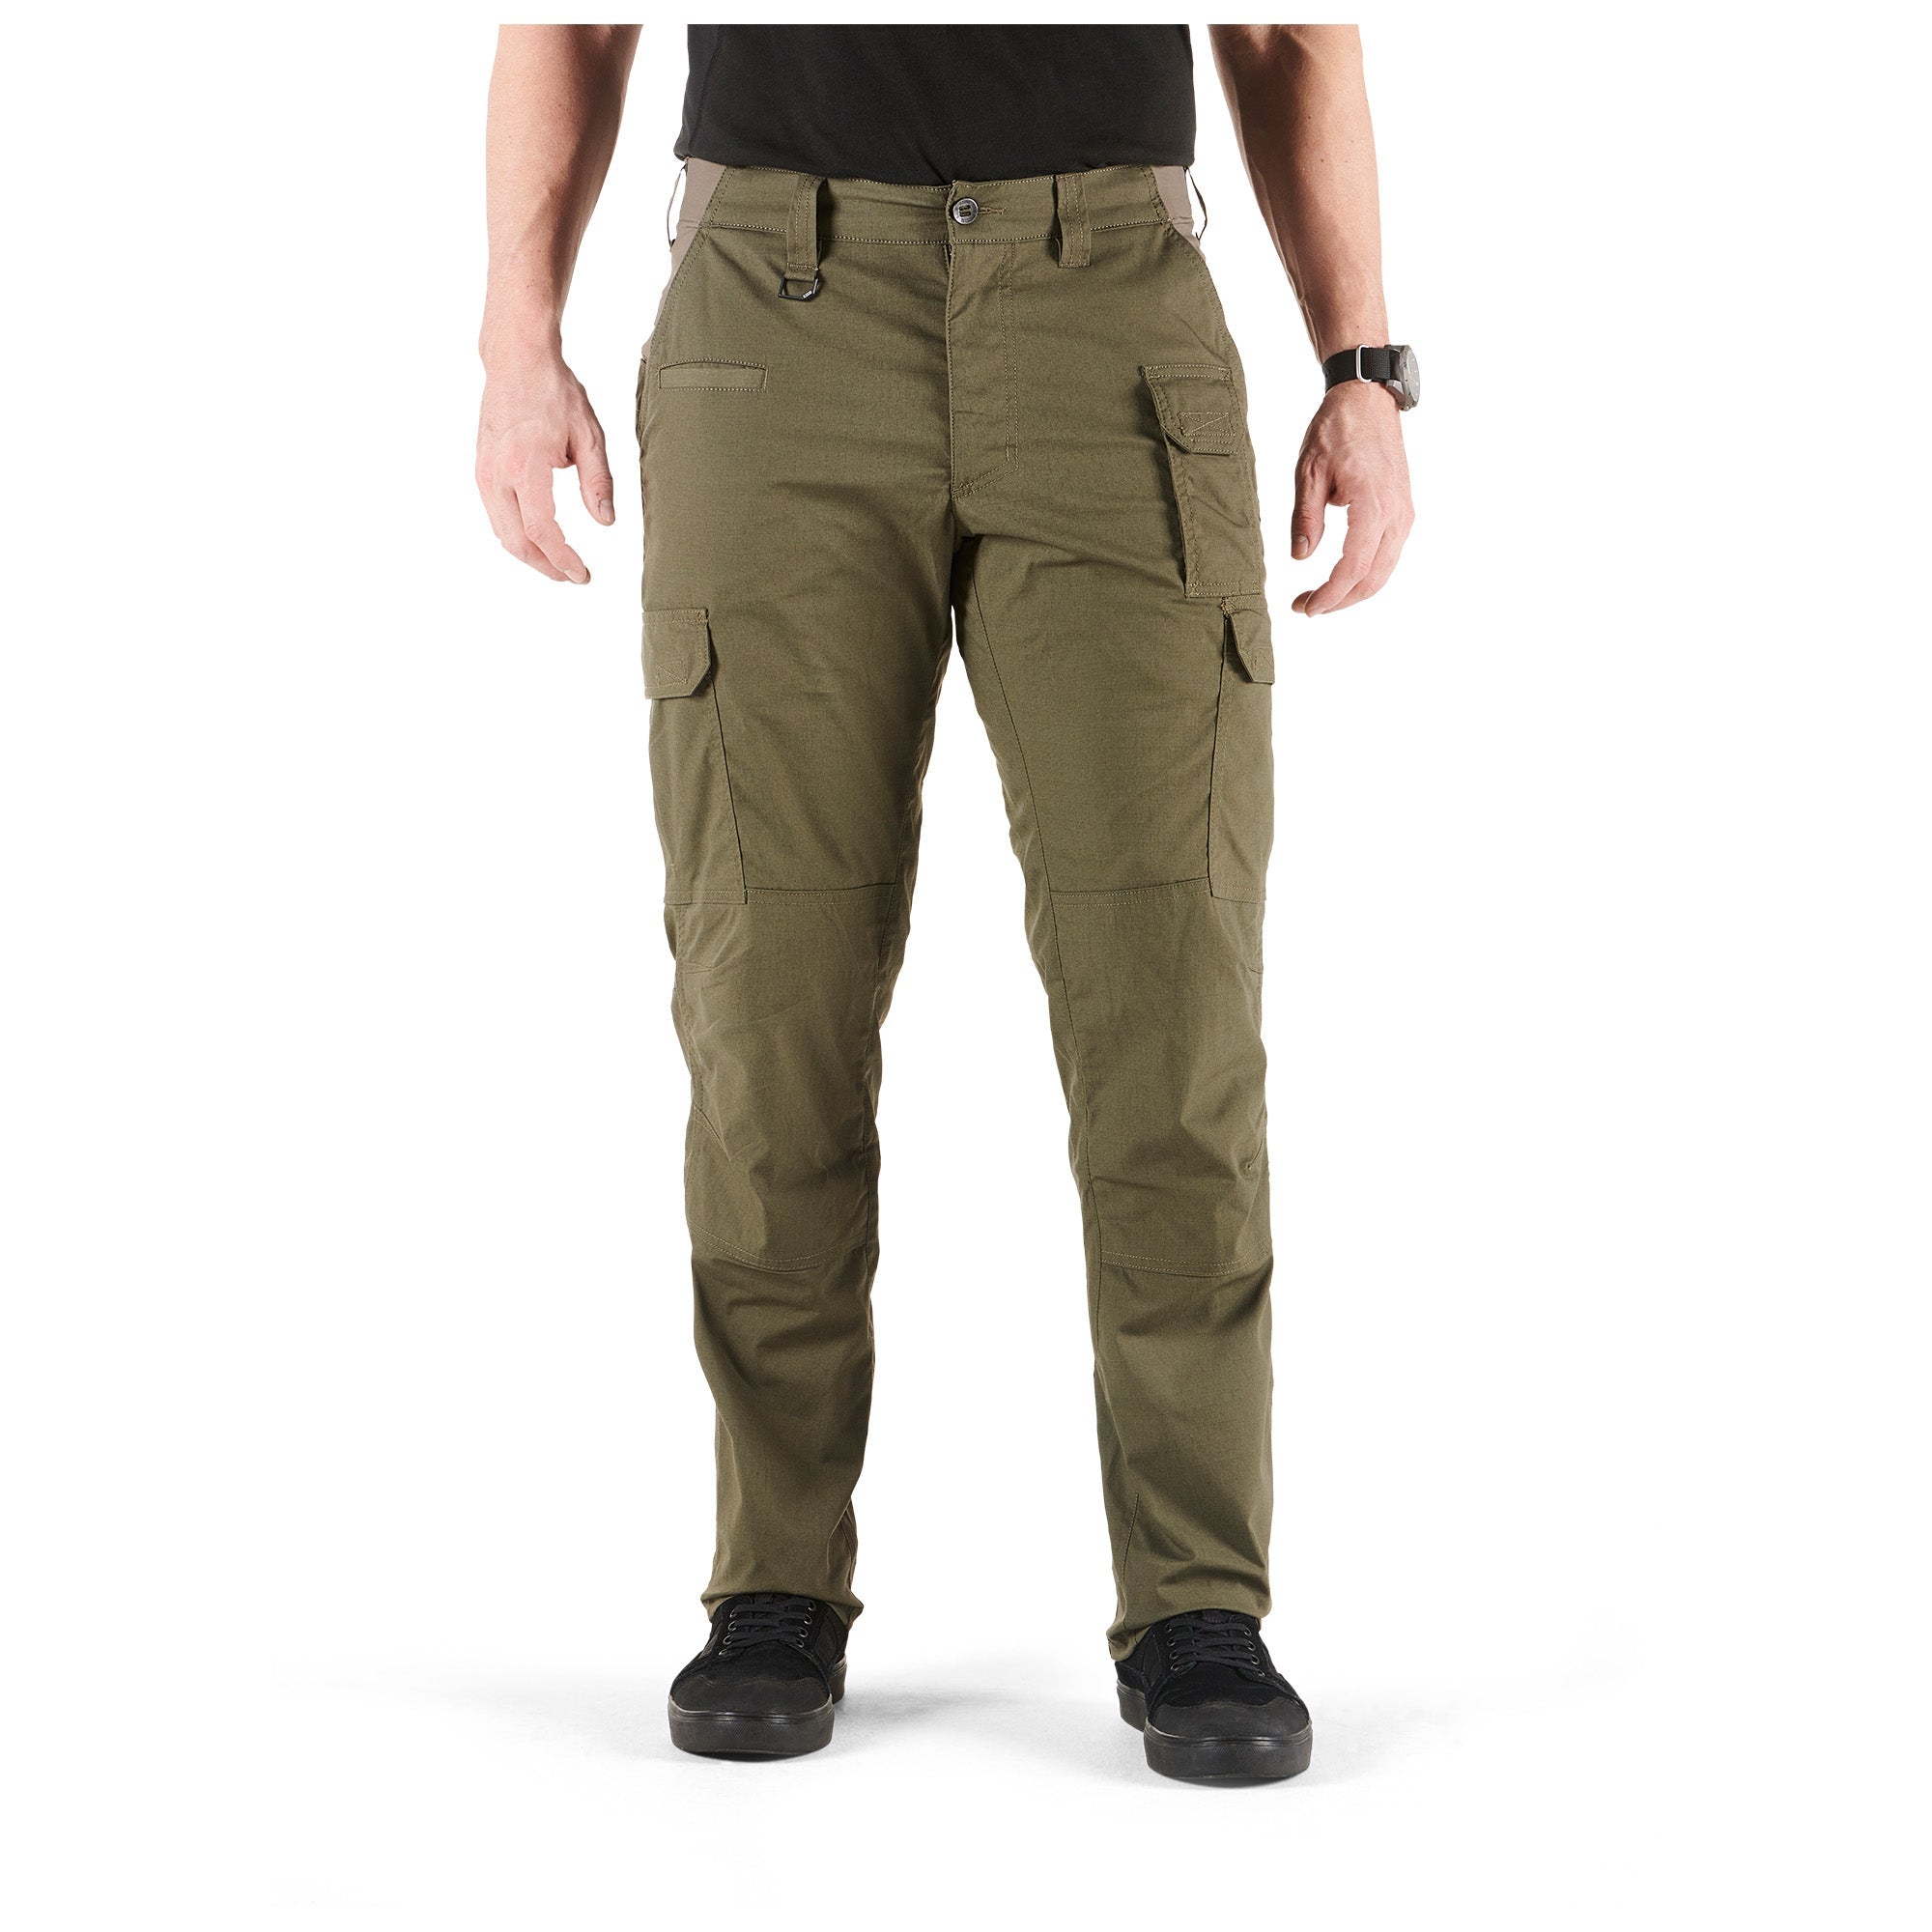 5.11 Tactical ABR Pro Pants Ranger Green Pants 5.11 Tactical 30 30 Tactical Gear Supplier Tactical Distributors Australia